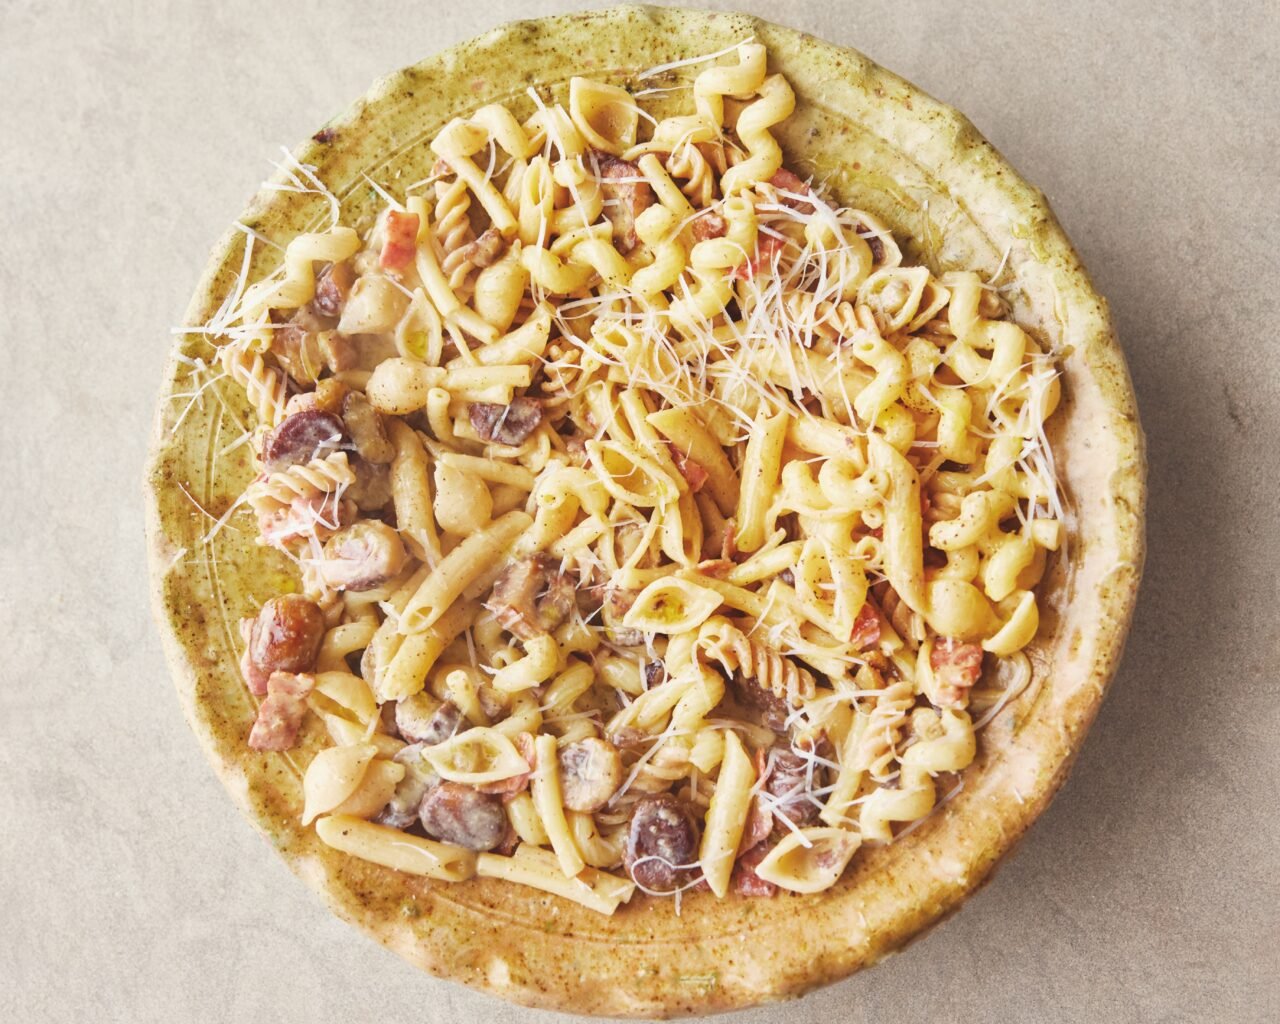 Chestnut Carbonara excerpted from 5 Ingredients Mediterranean by Jamie Oliver.